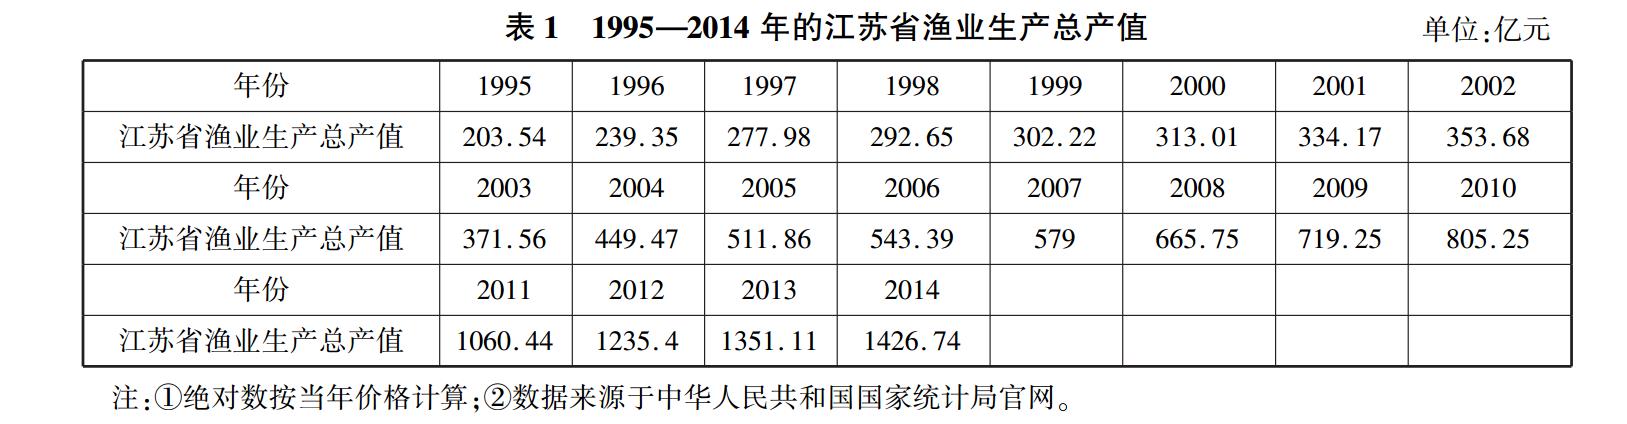 1995—2014 年的江苏省渔业生产总产值